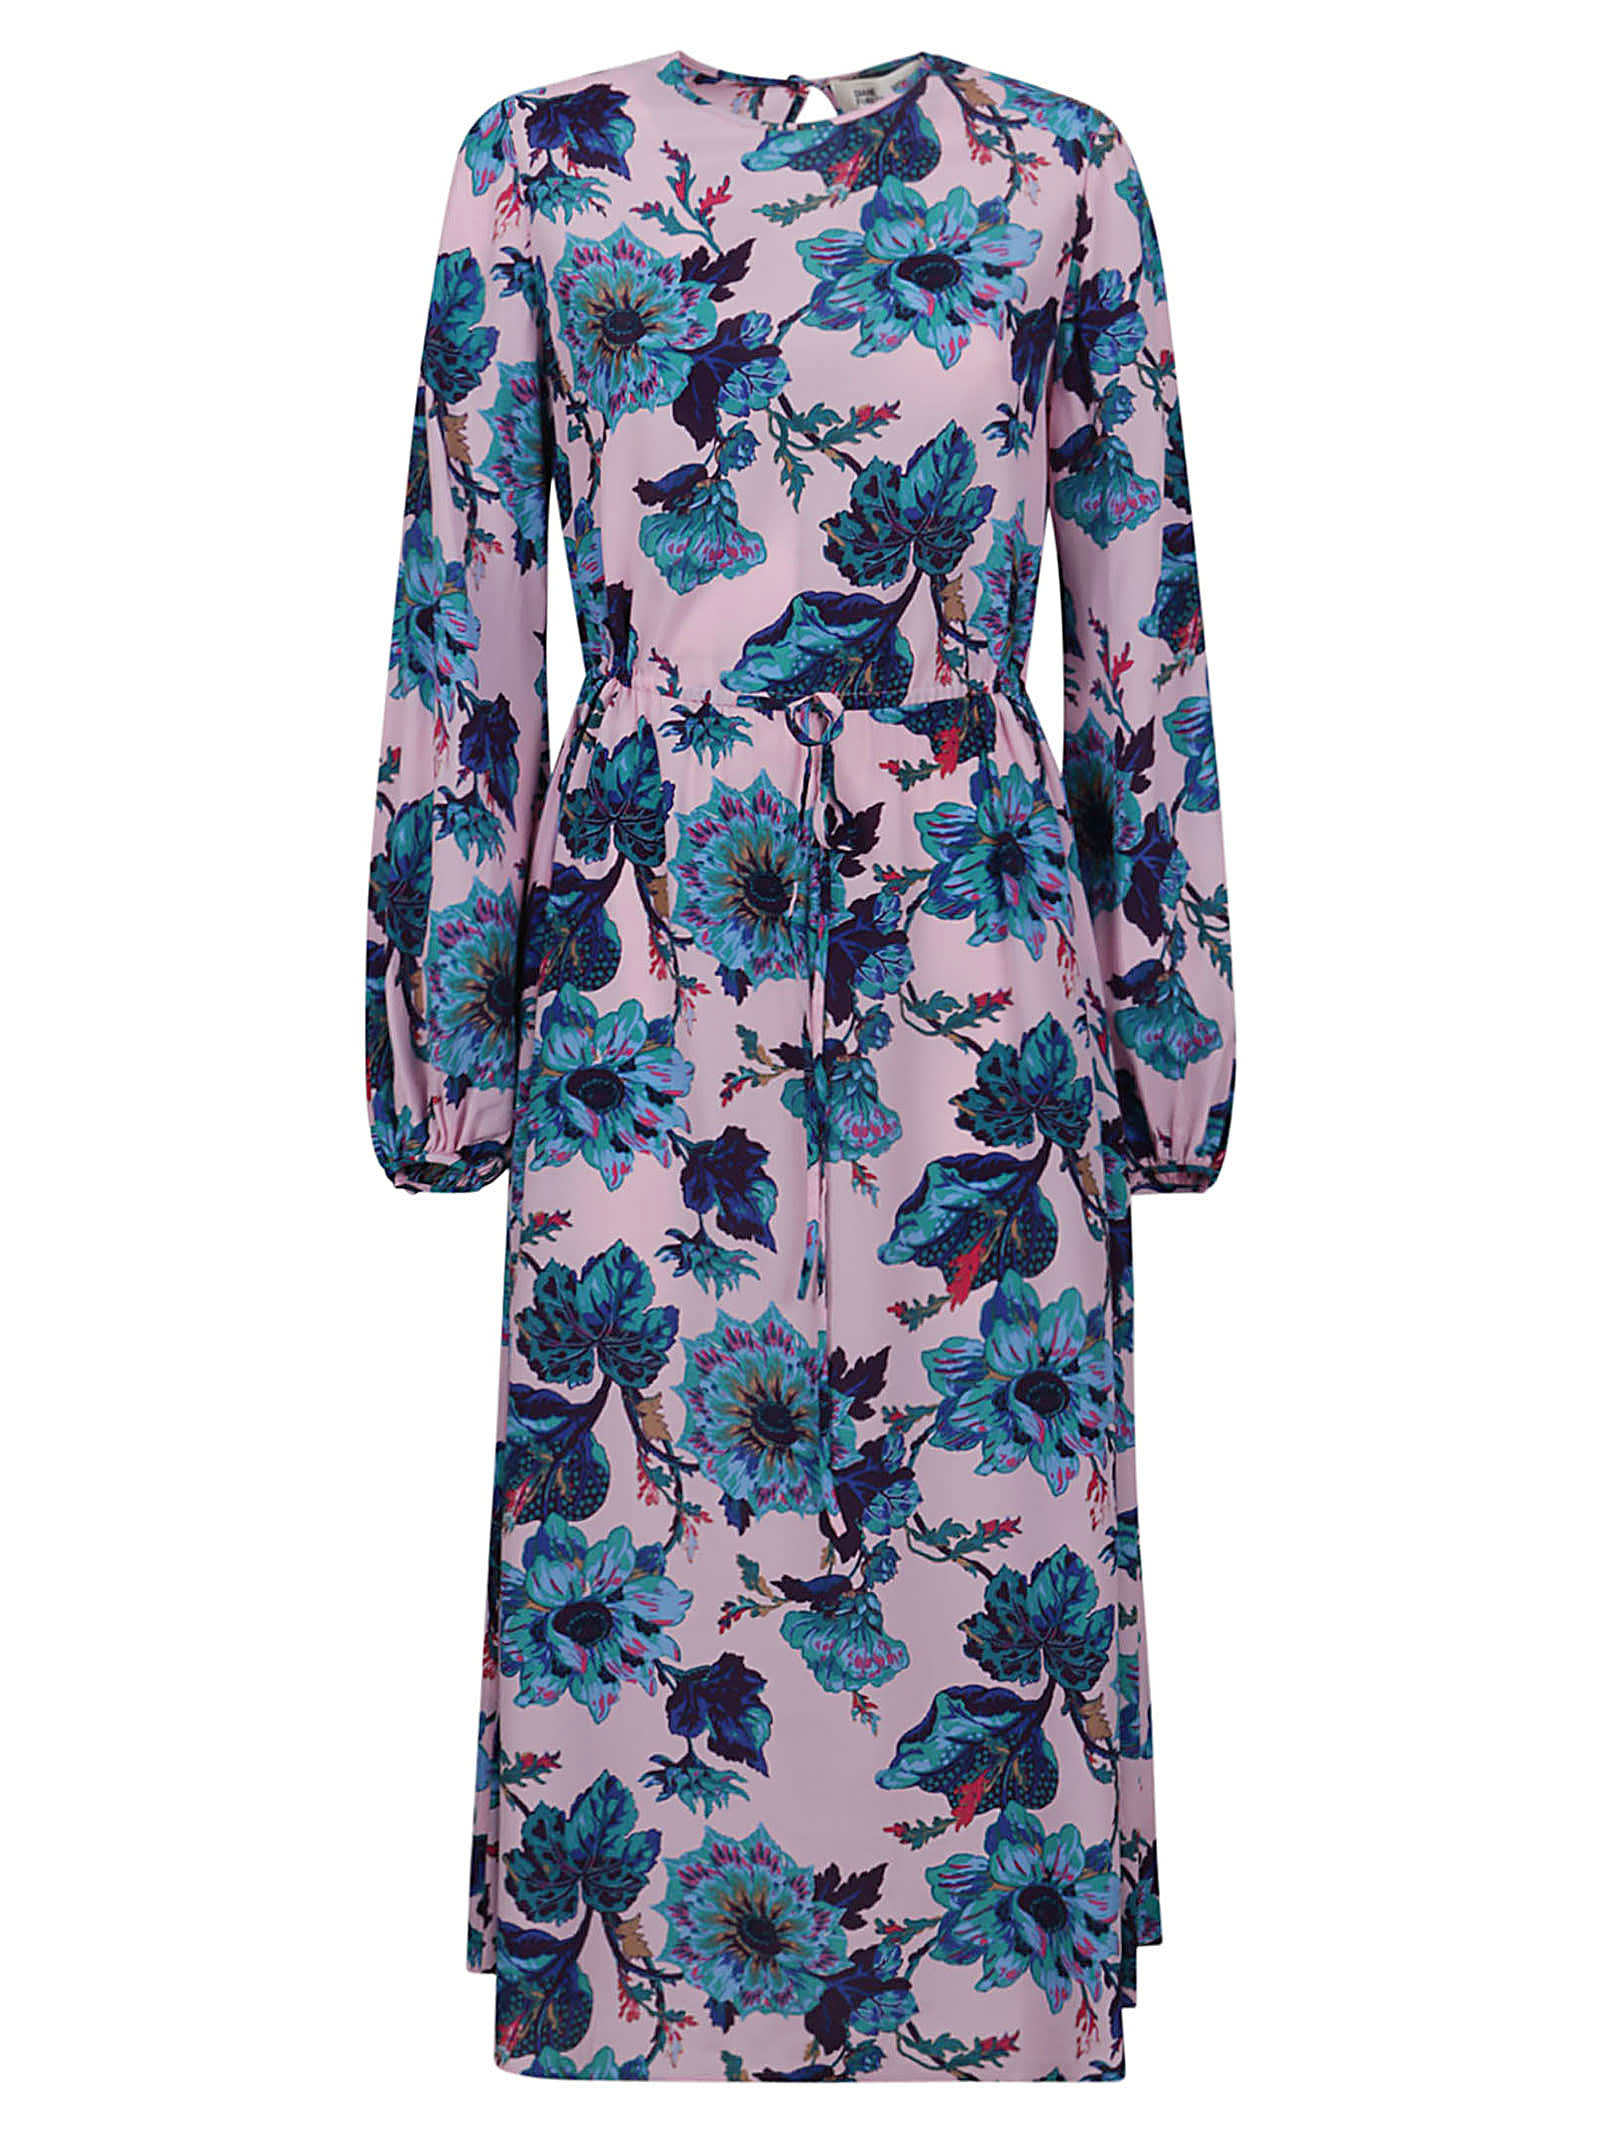 Diane Von Furstenberg Sydney Dress